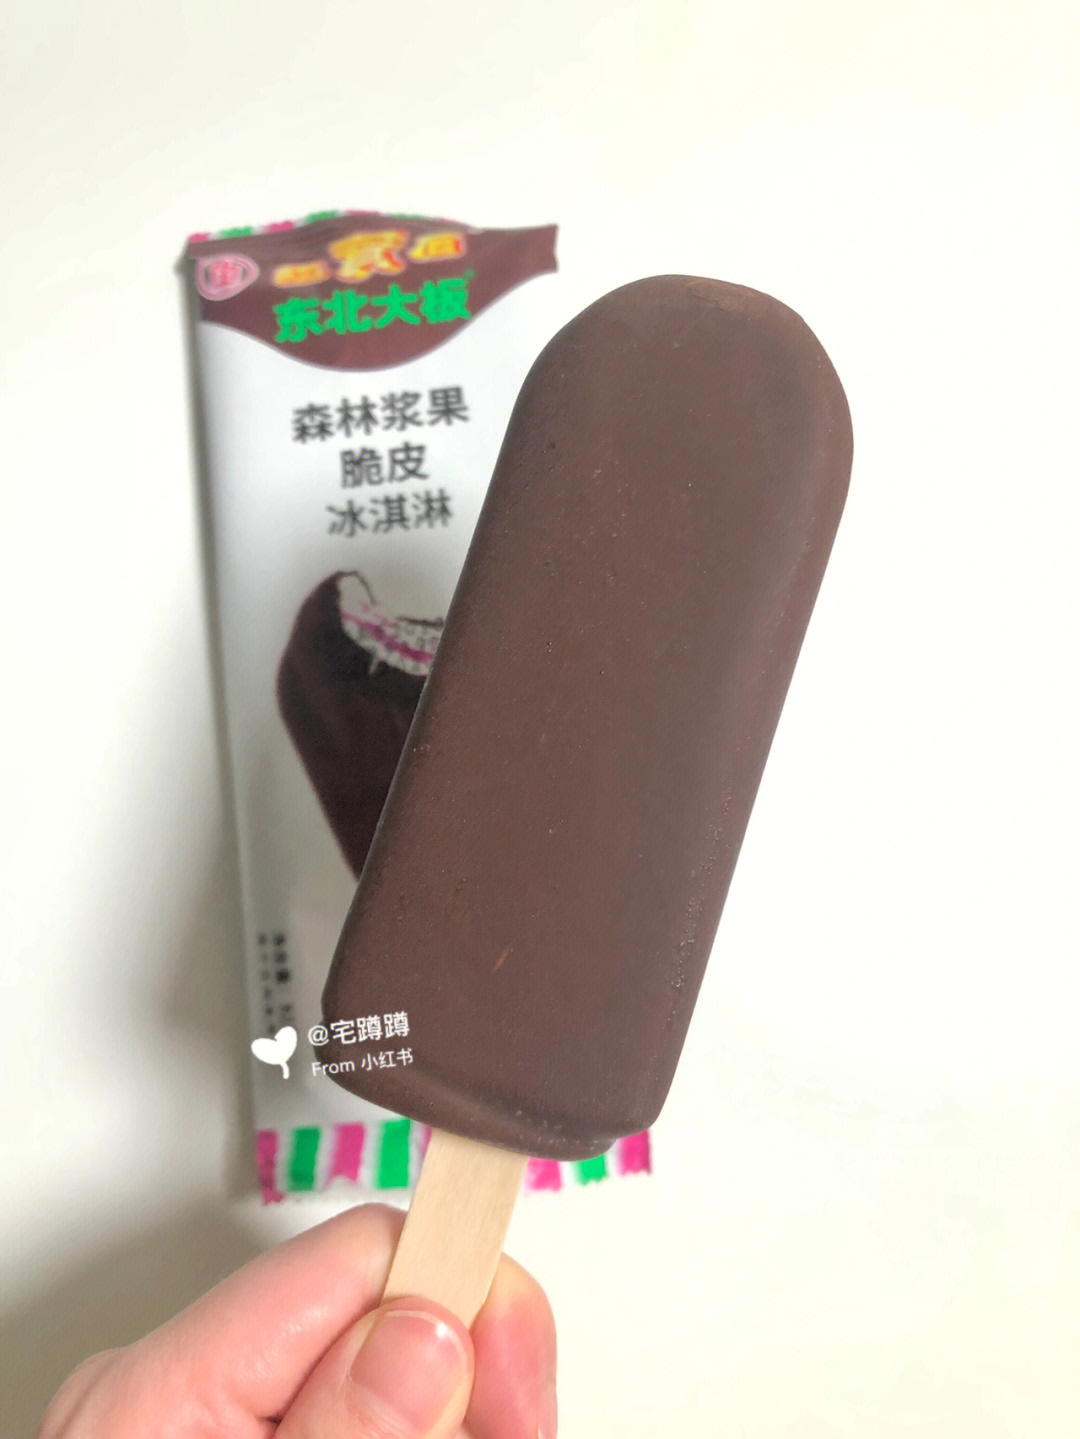 东北大板森林浆果脆皮冰淇淋,最外面的脆皮应该是黑巧克力,微微有点